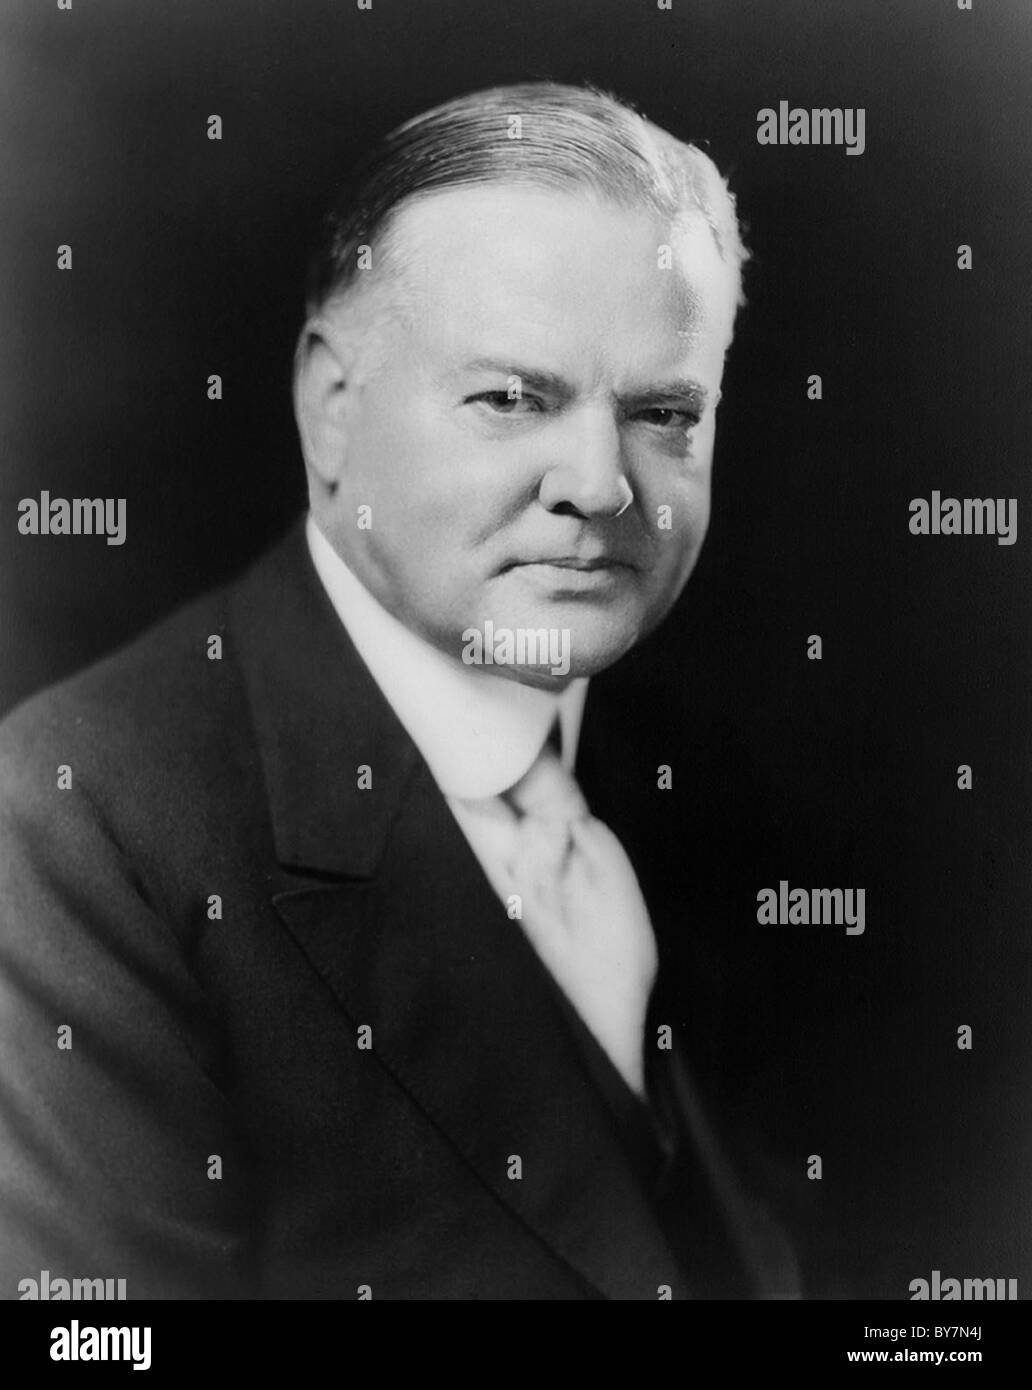 Herbert Clark Hoover era el 31º Presidente de los Estados Unidos (1929-1933). Foto de stock